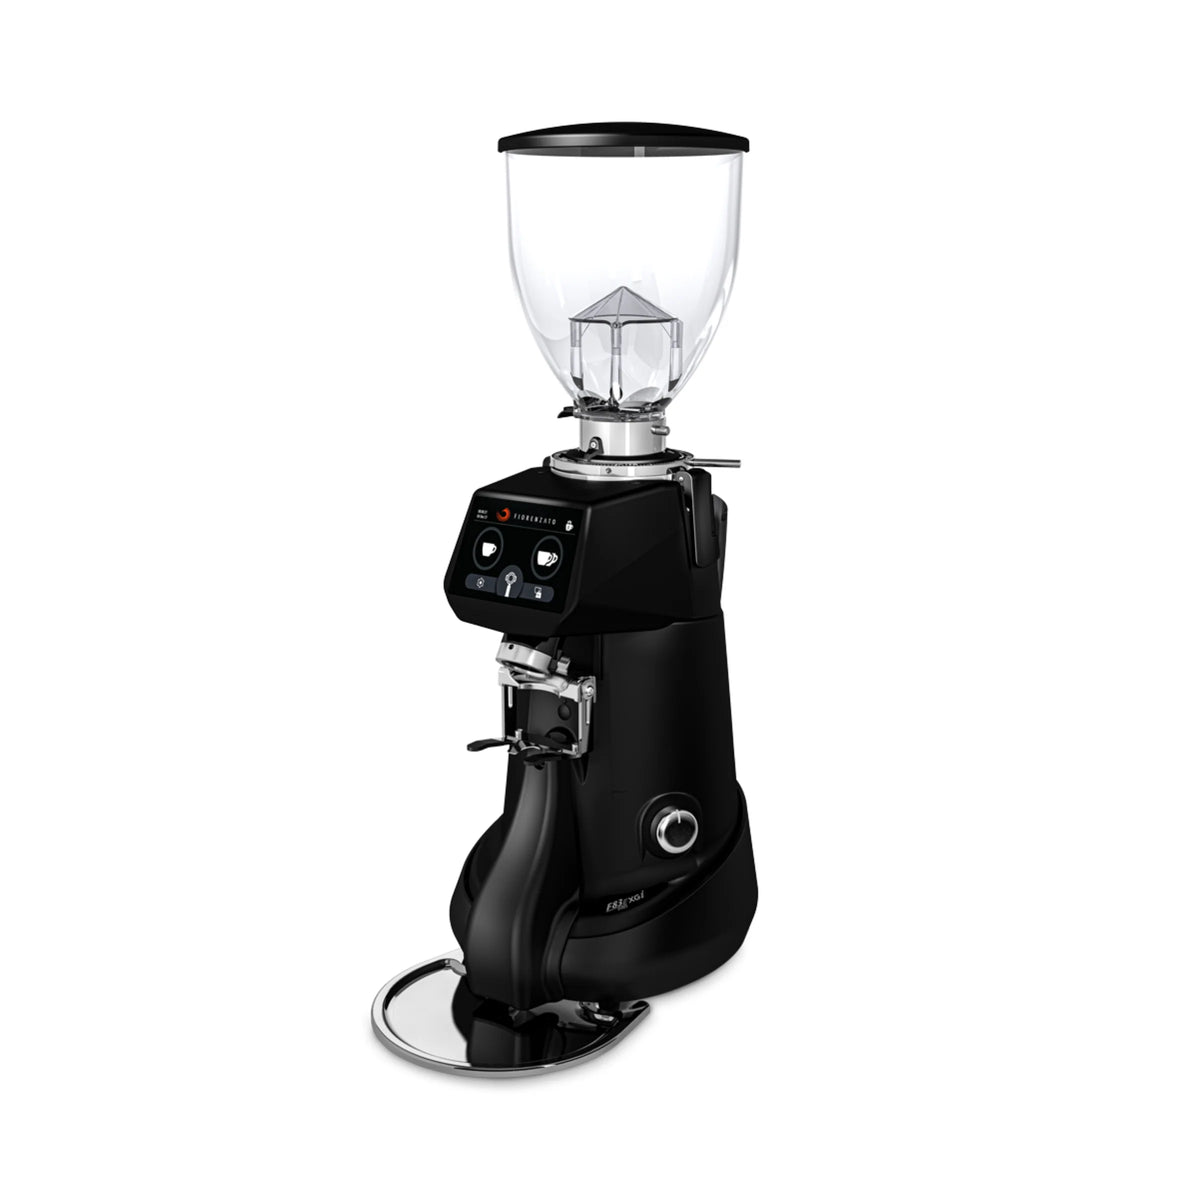 Fiorenzato F83 E XGI Pro 按重量研磨浓缩咖啡研磨机